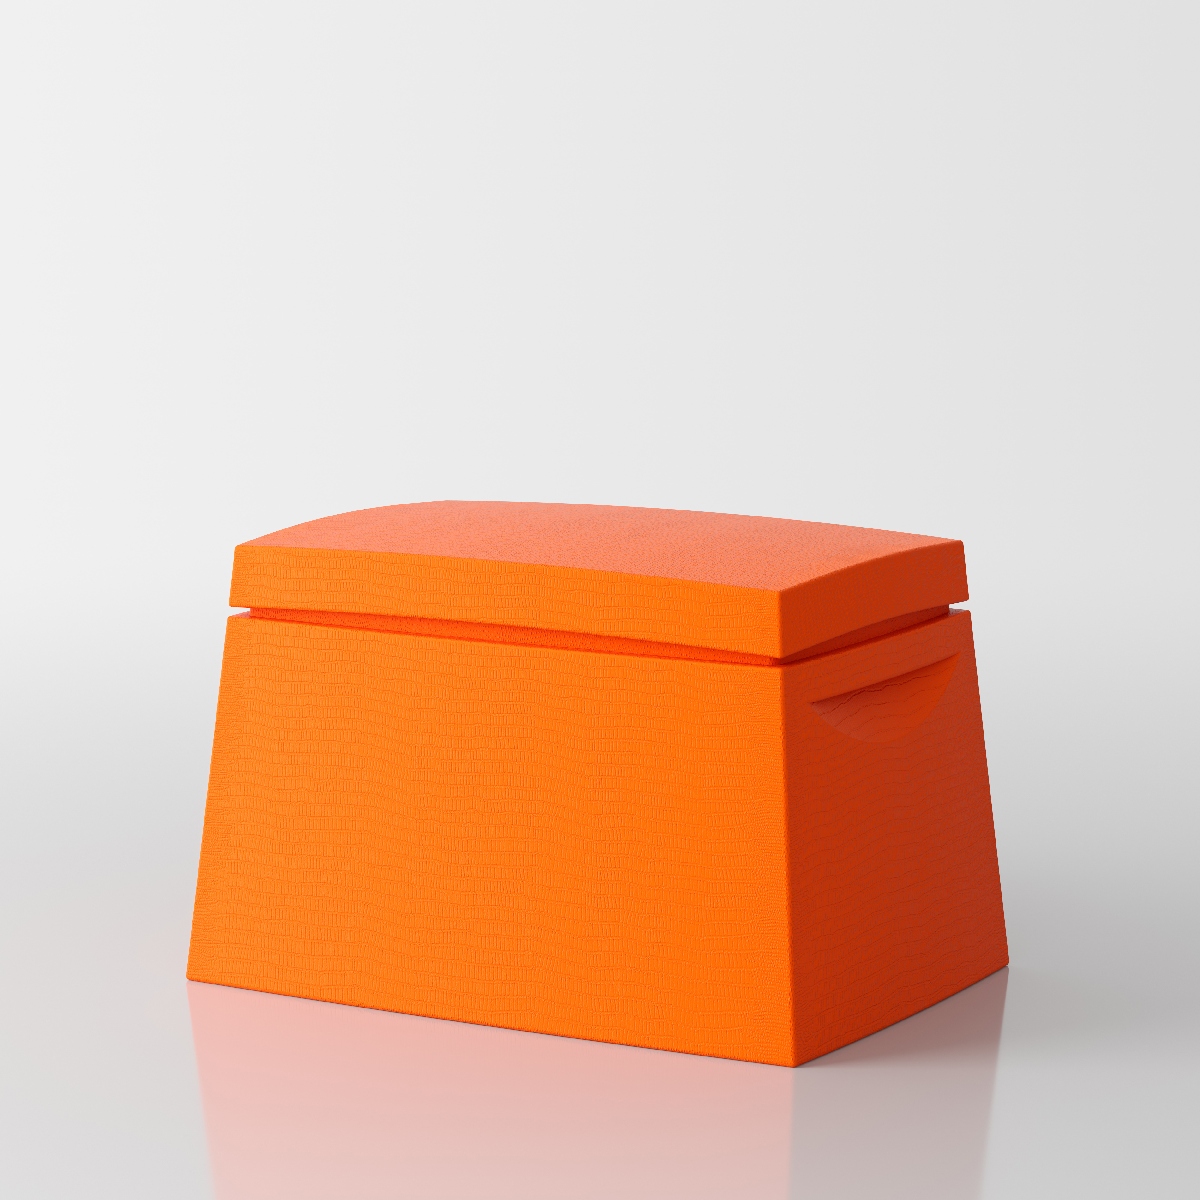 Big box mehrzweck Truhe  von Servetto - orange 4